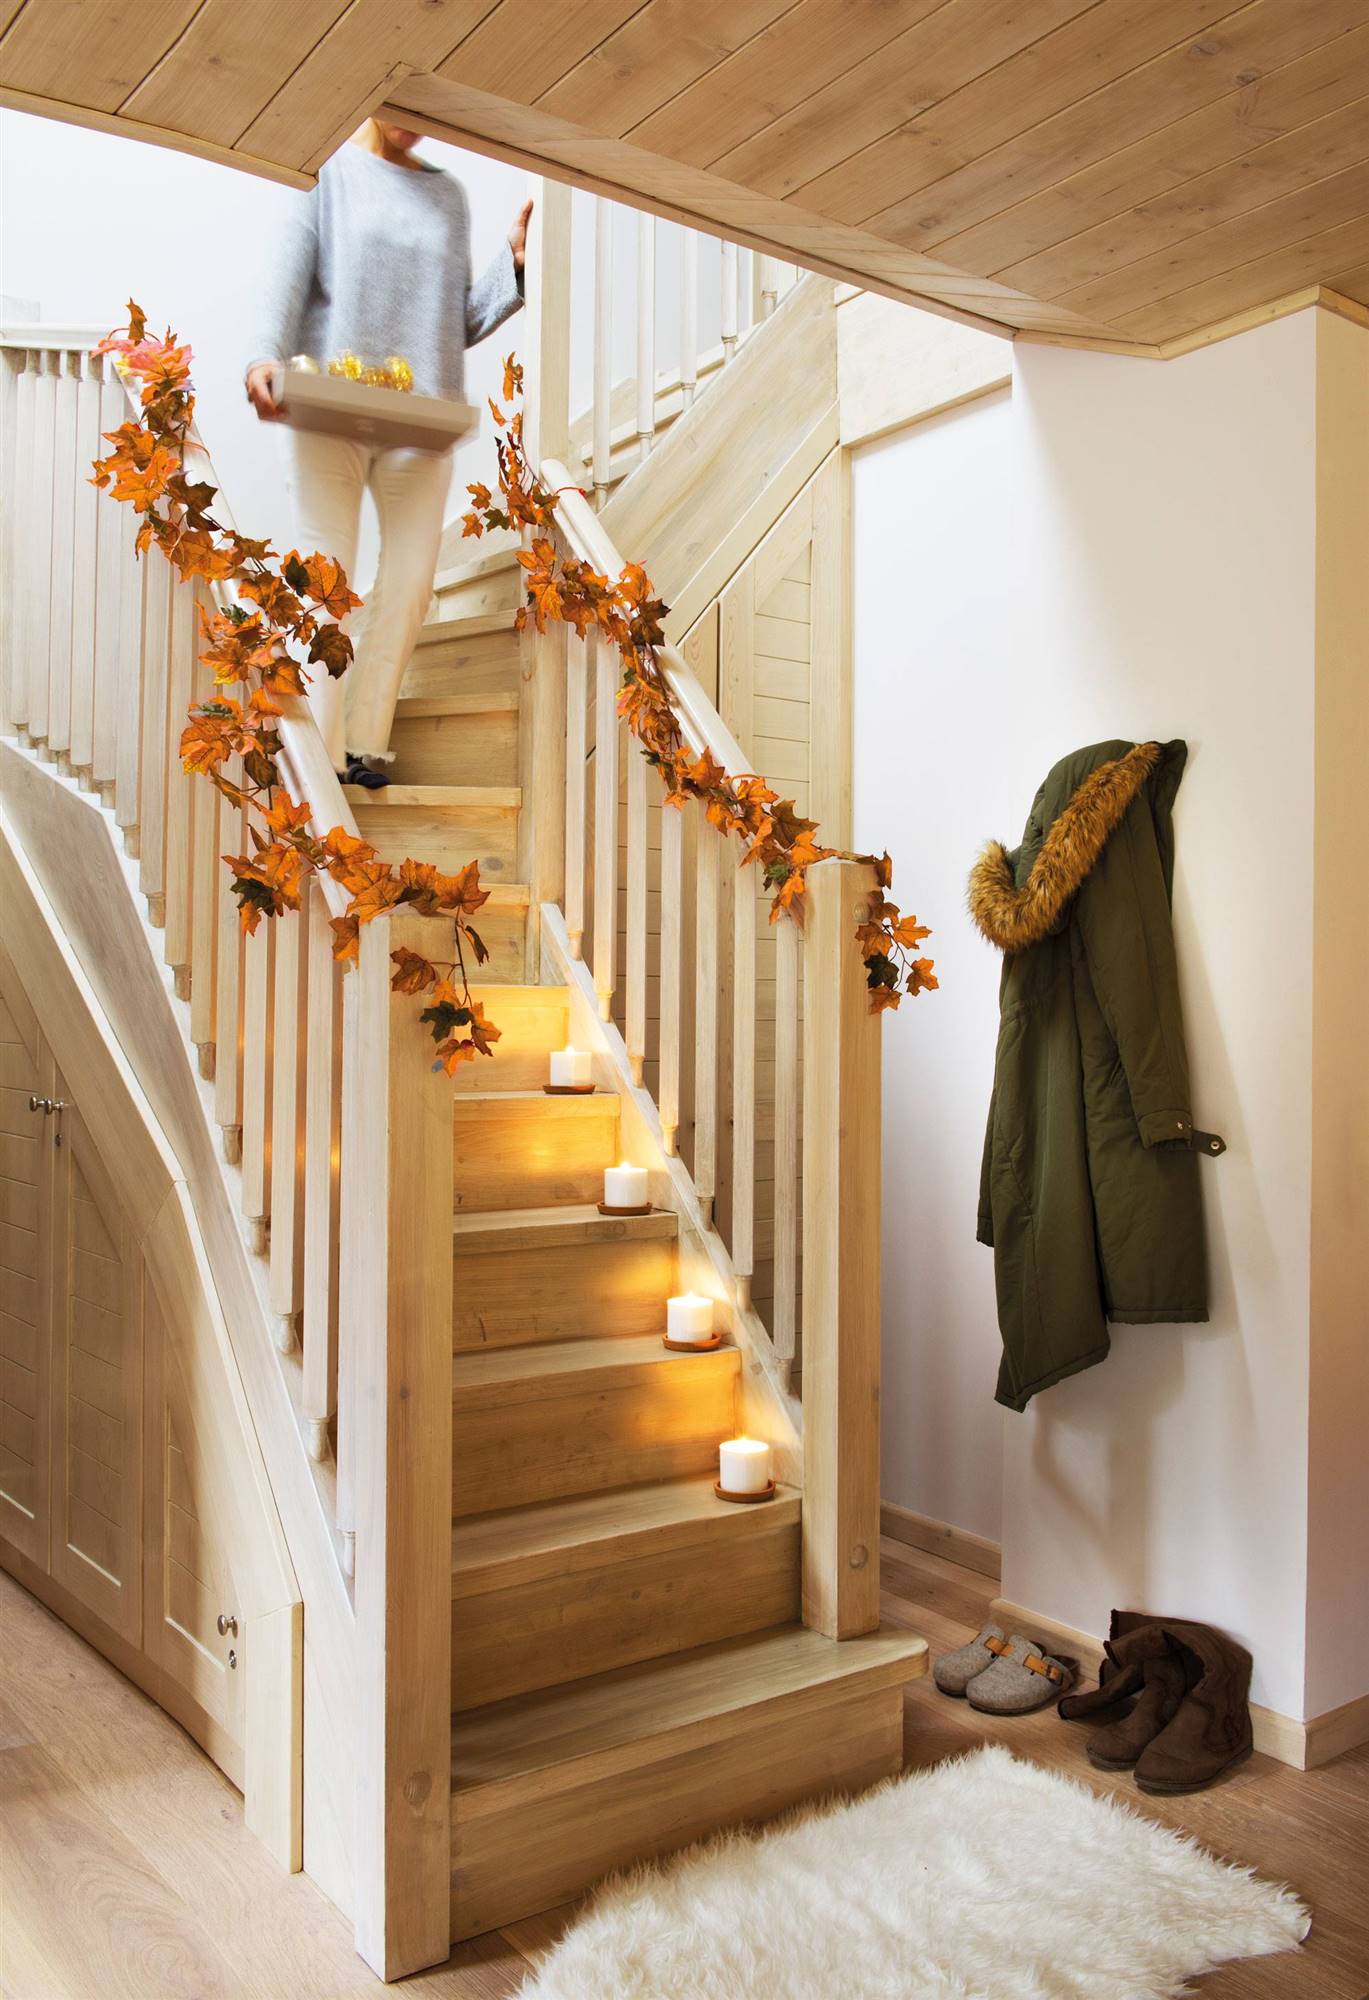 Escalera de Navidad decorada con guirnalda de hojas otoñales_00445005